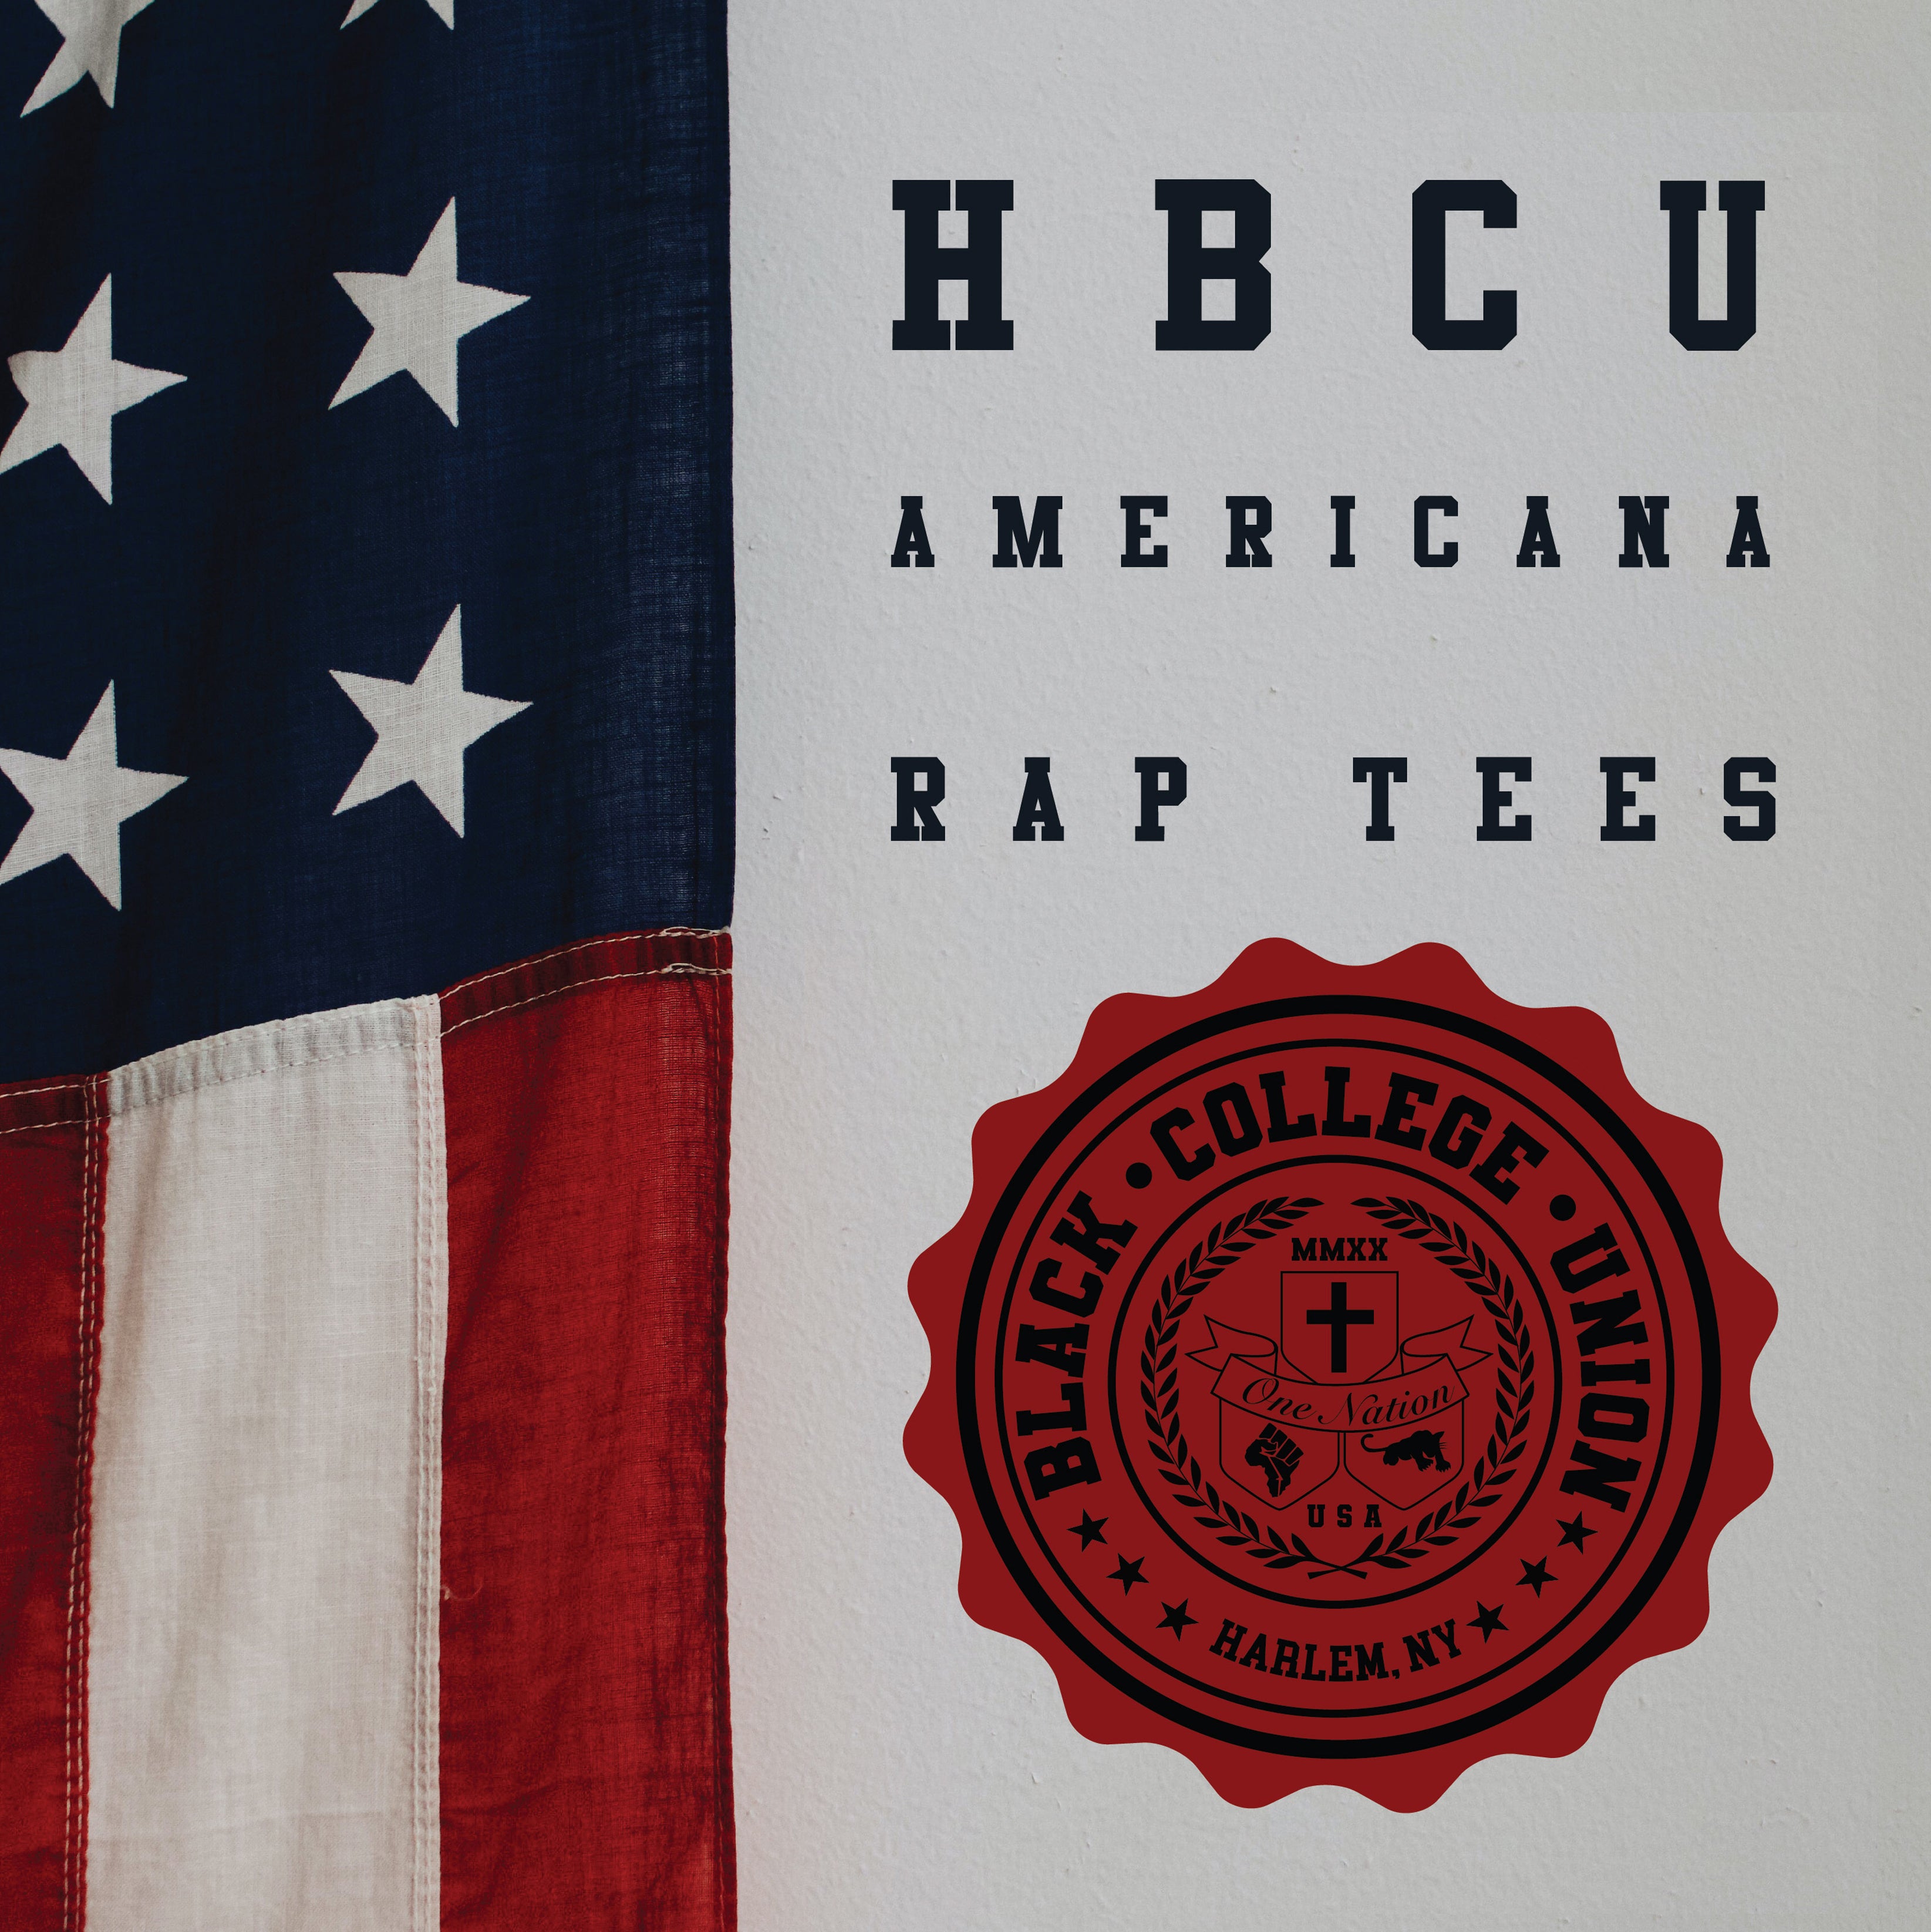 BCU X Champion Original HBCU Americana Rap Tee - Lincoln PA [LU]